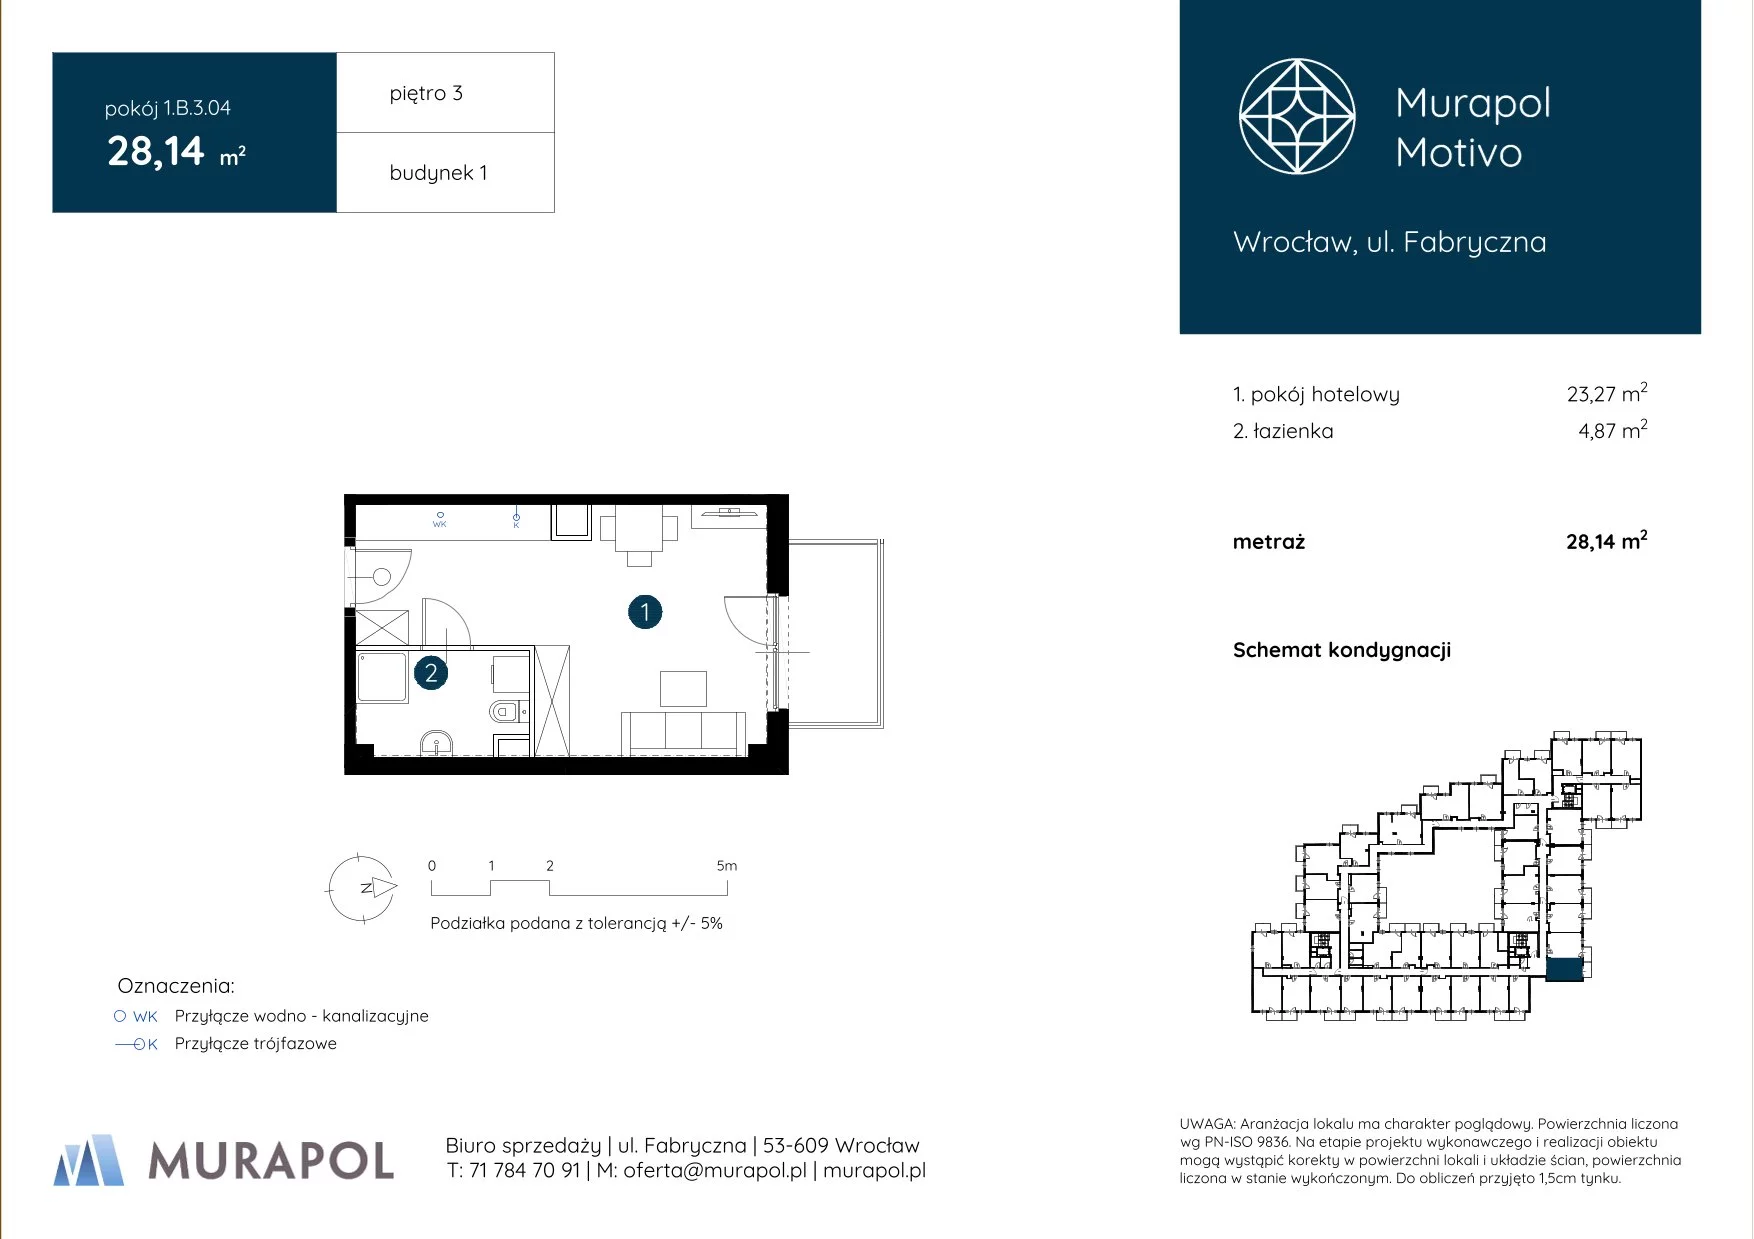 Apartament inwestycyjny 28,14 m², piętro 3, oferta nr 1.B.3.04, Murapol Motivo, Wrocław, Muchobór Mały, Fabryczna, ul. Fabryczna